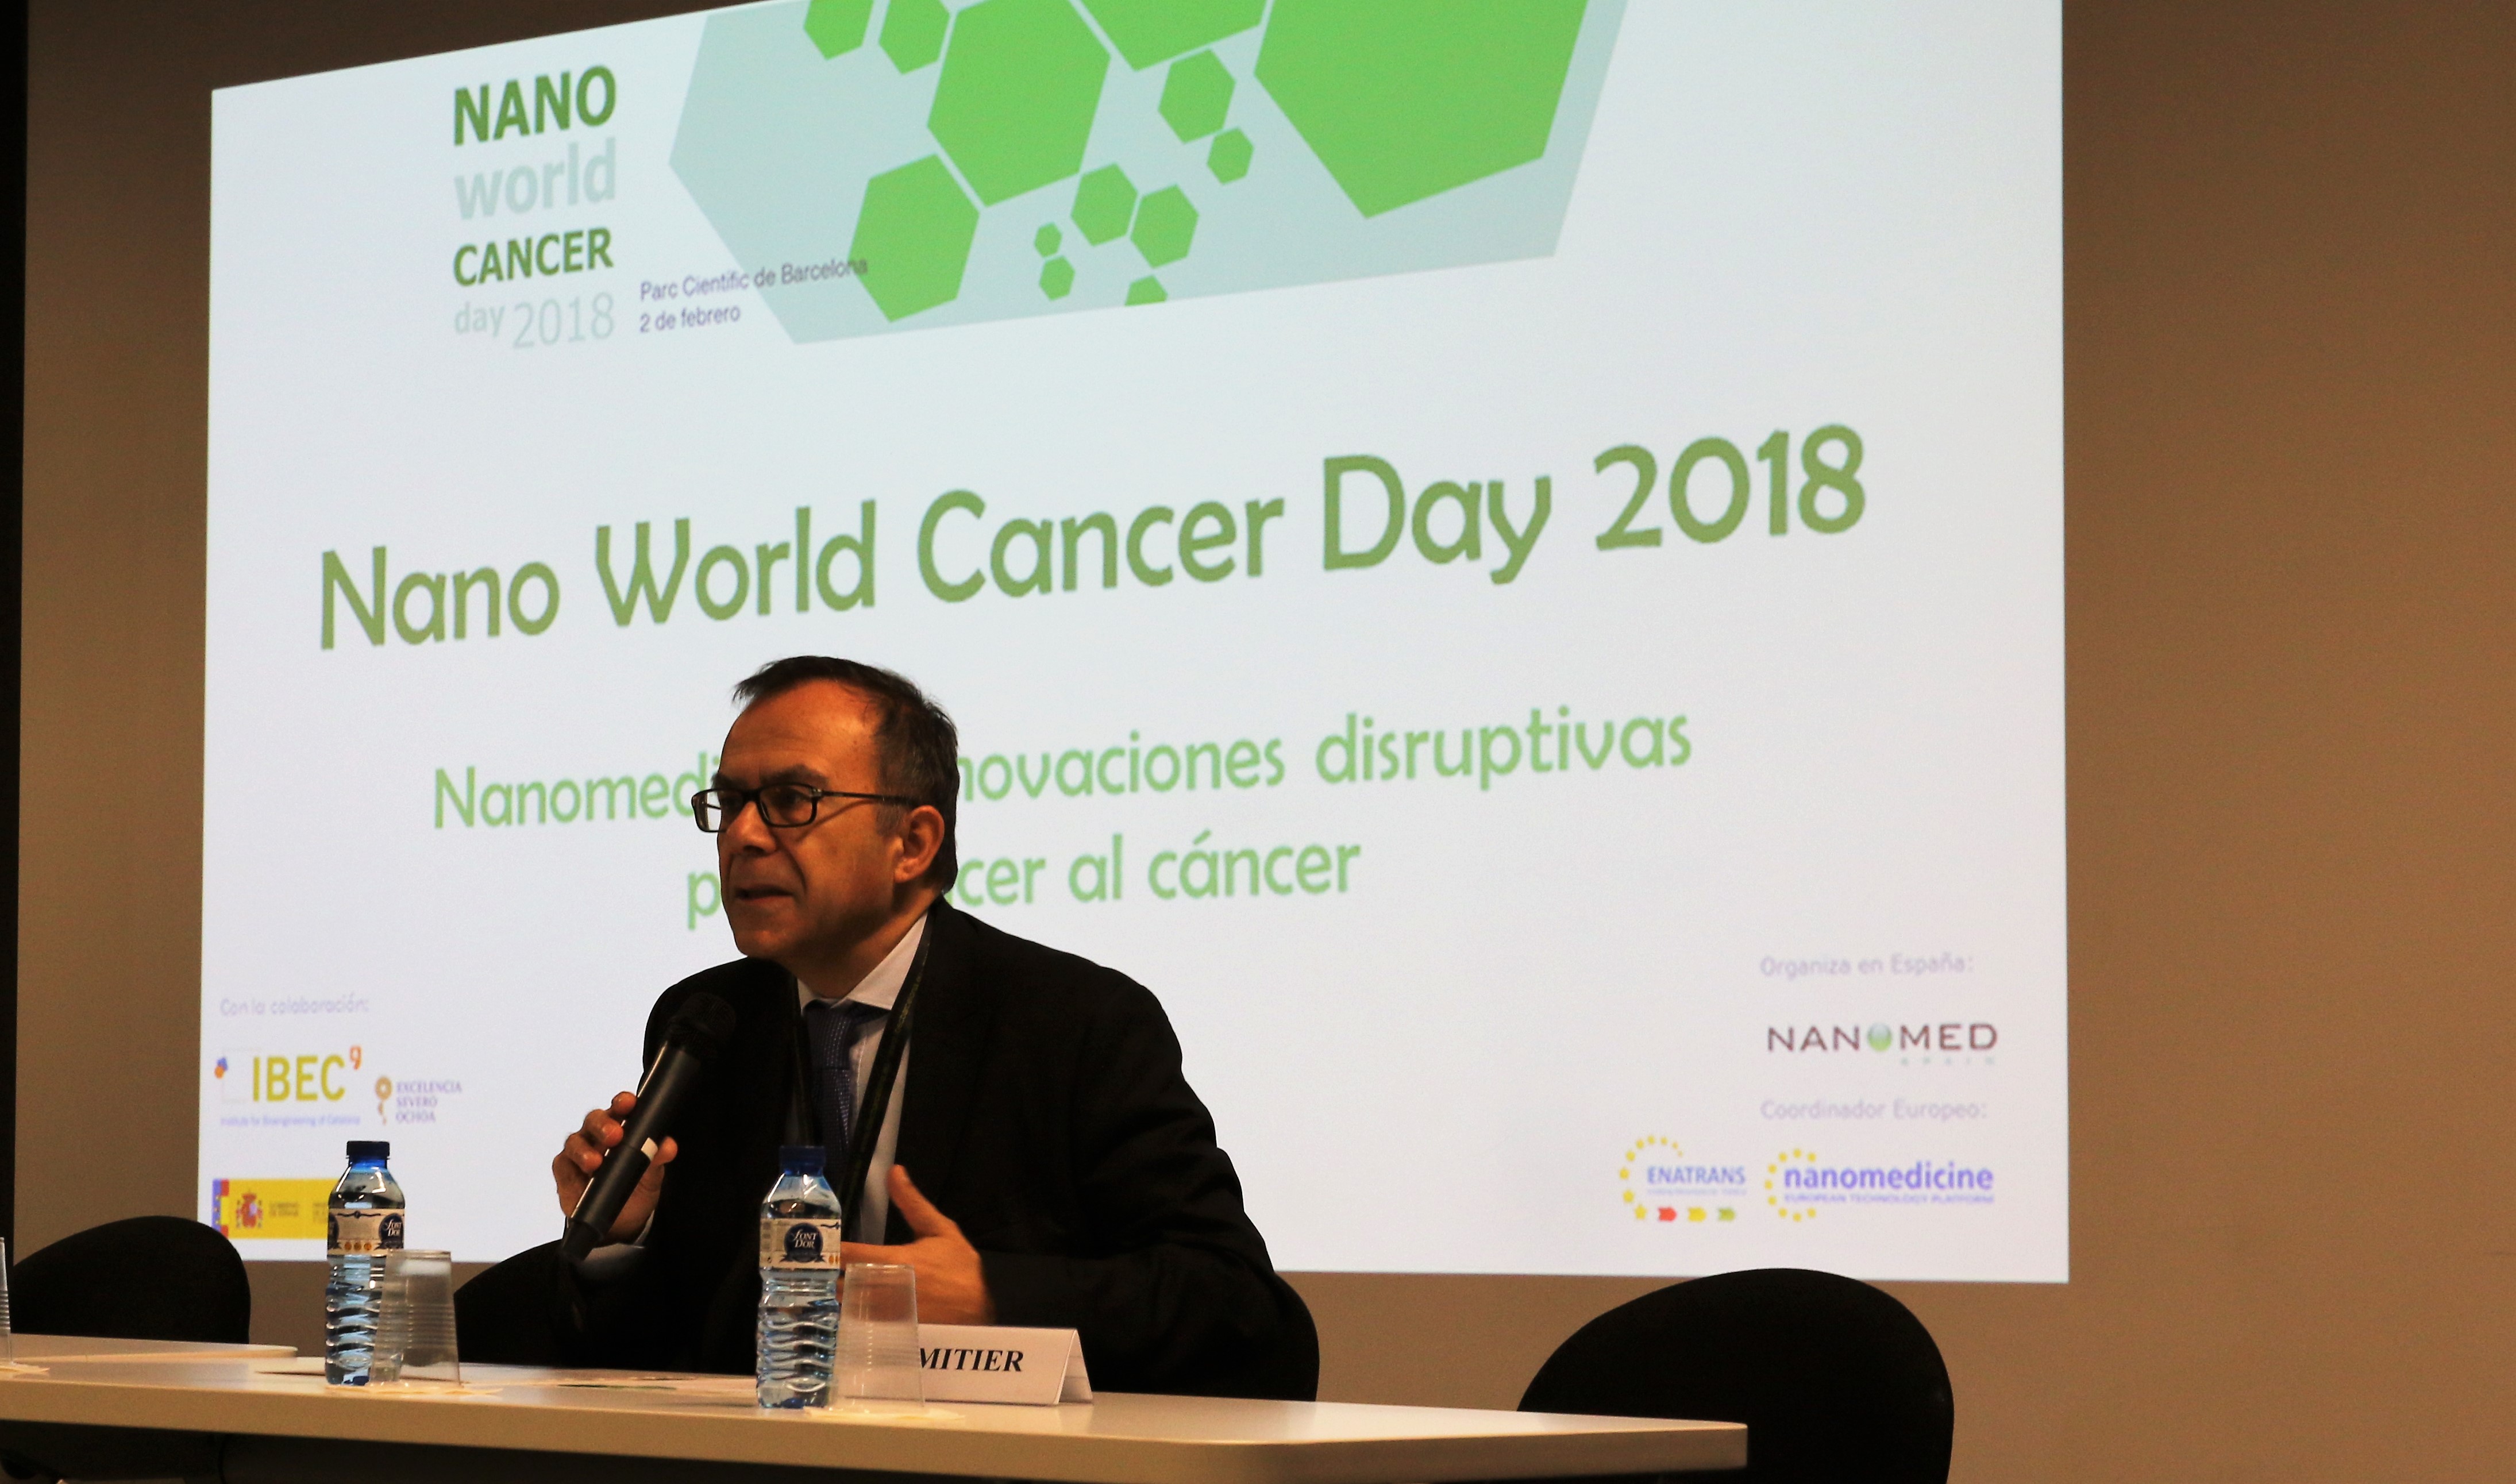 Josep Samitier: “El mayor reto de nanomedicina contra cáncer es mayor inversión”